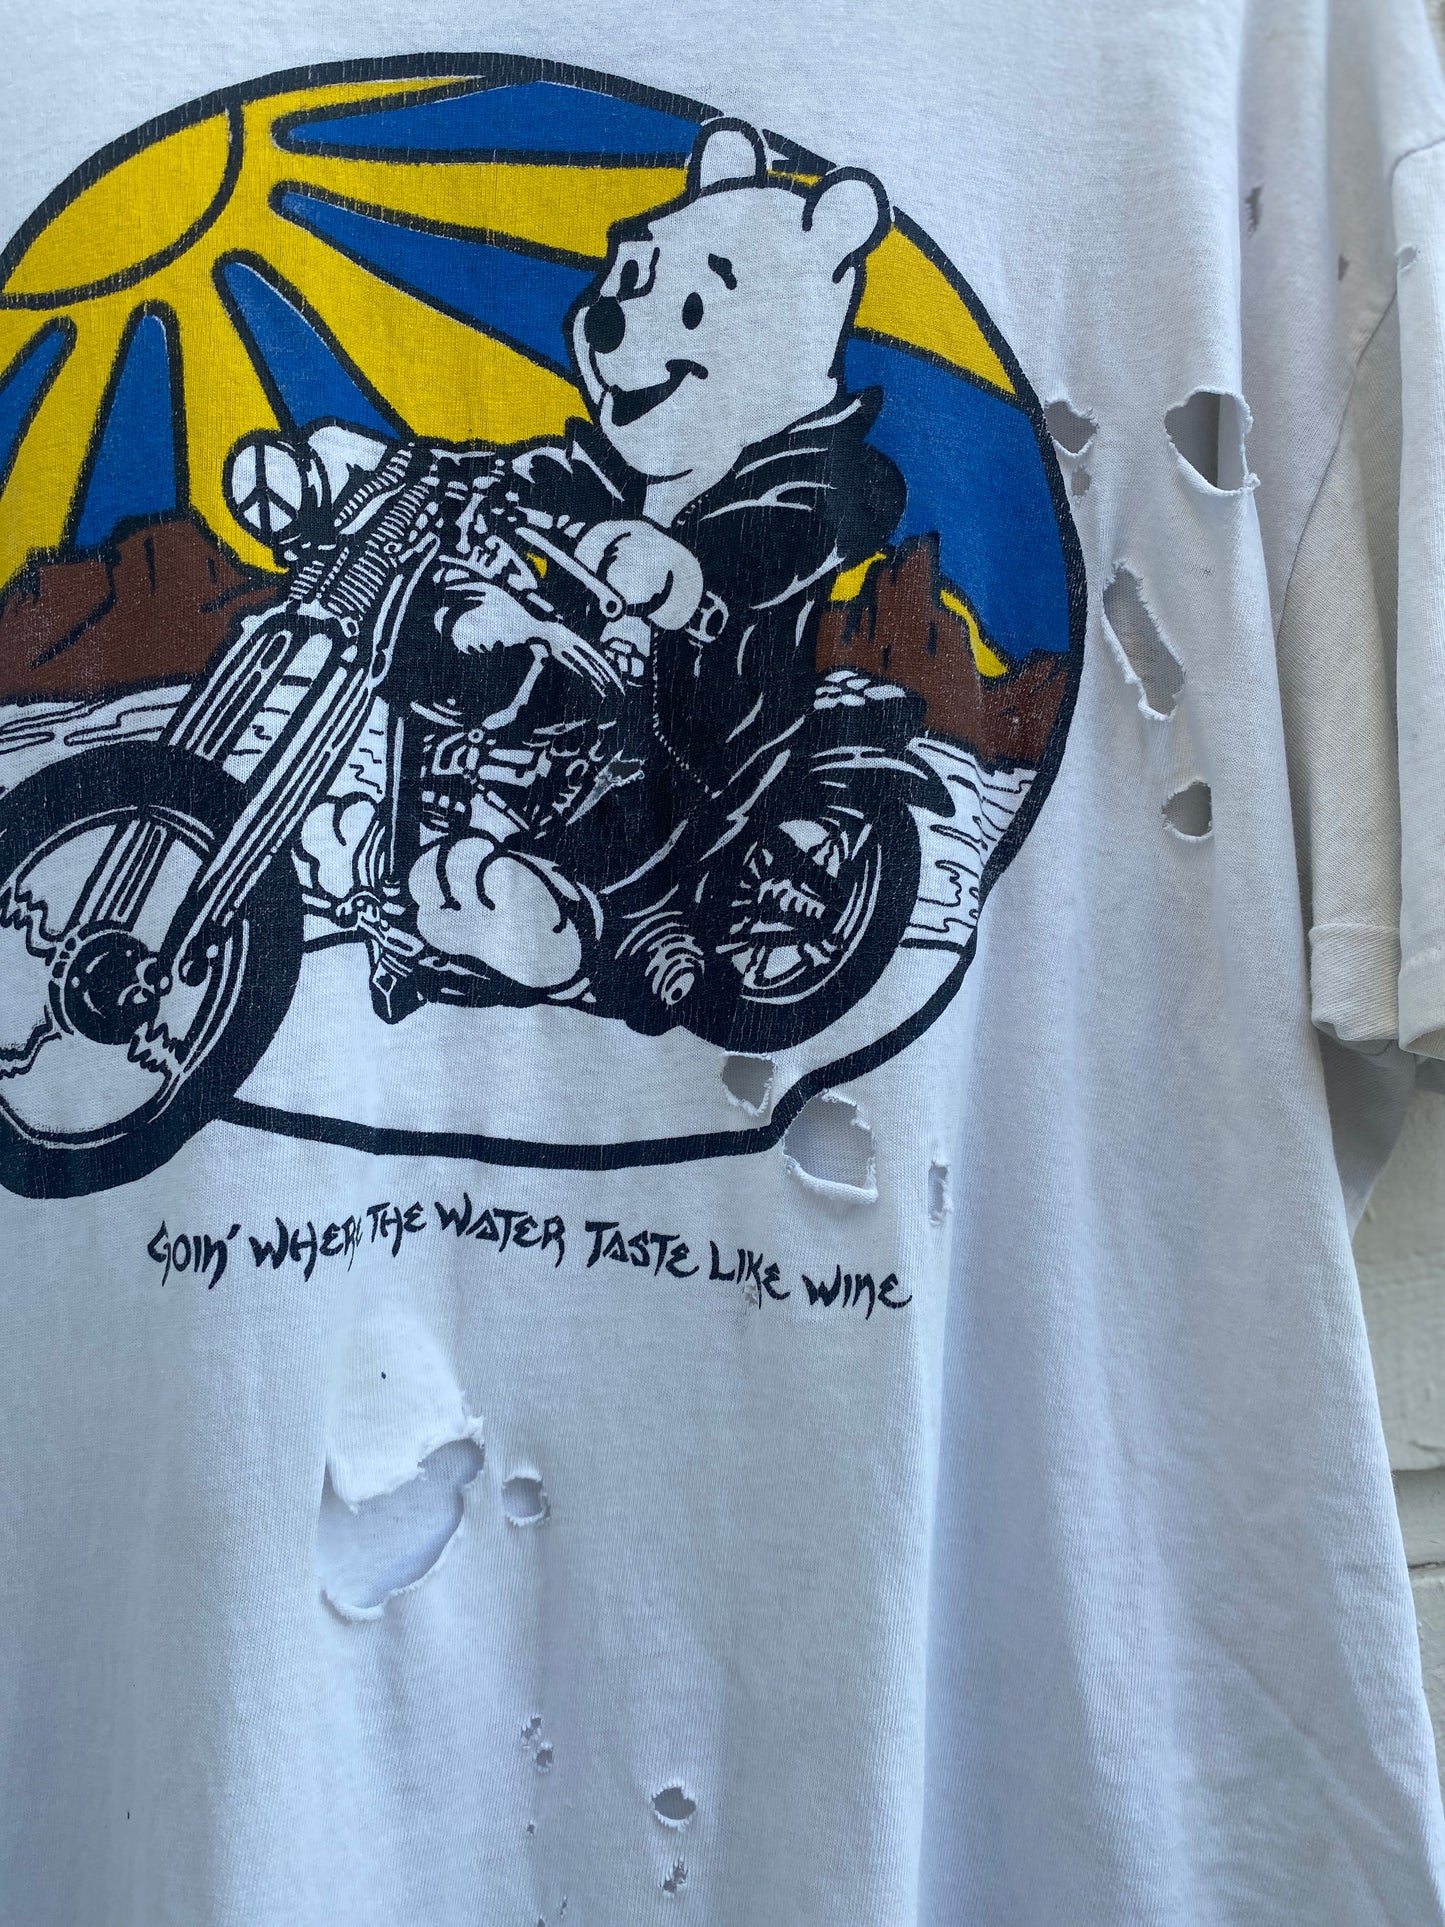 Vintage Grateful Dead x Winnie the Pooh T-shirt Water Tastes Like Wine XL